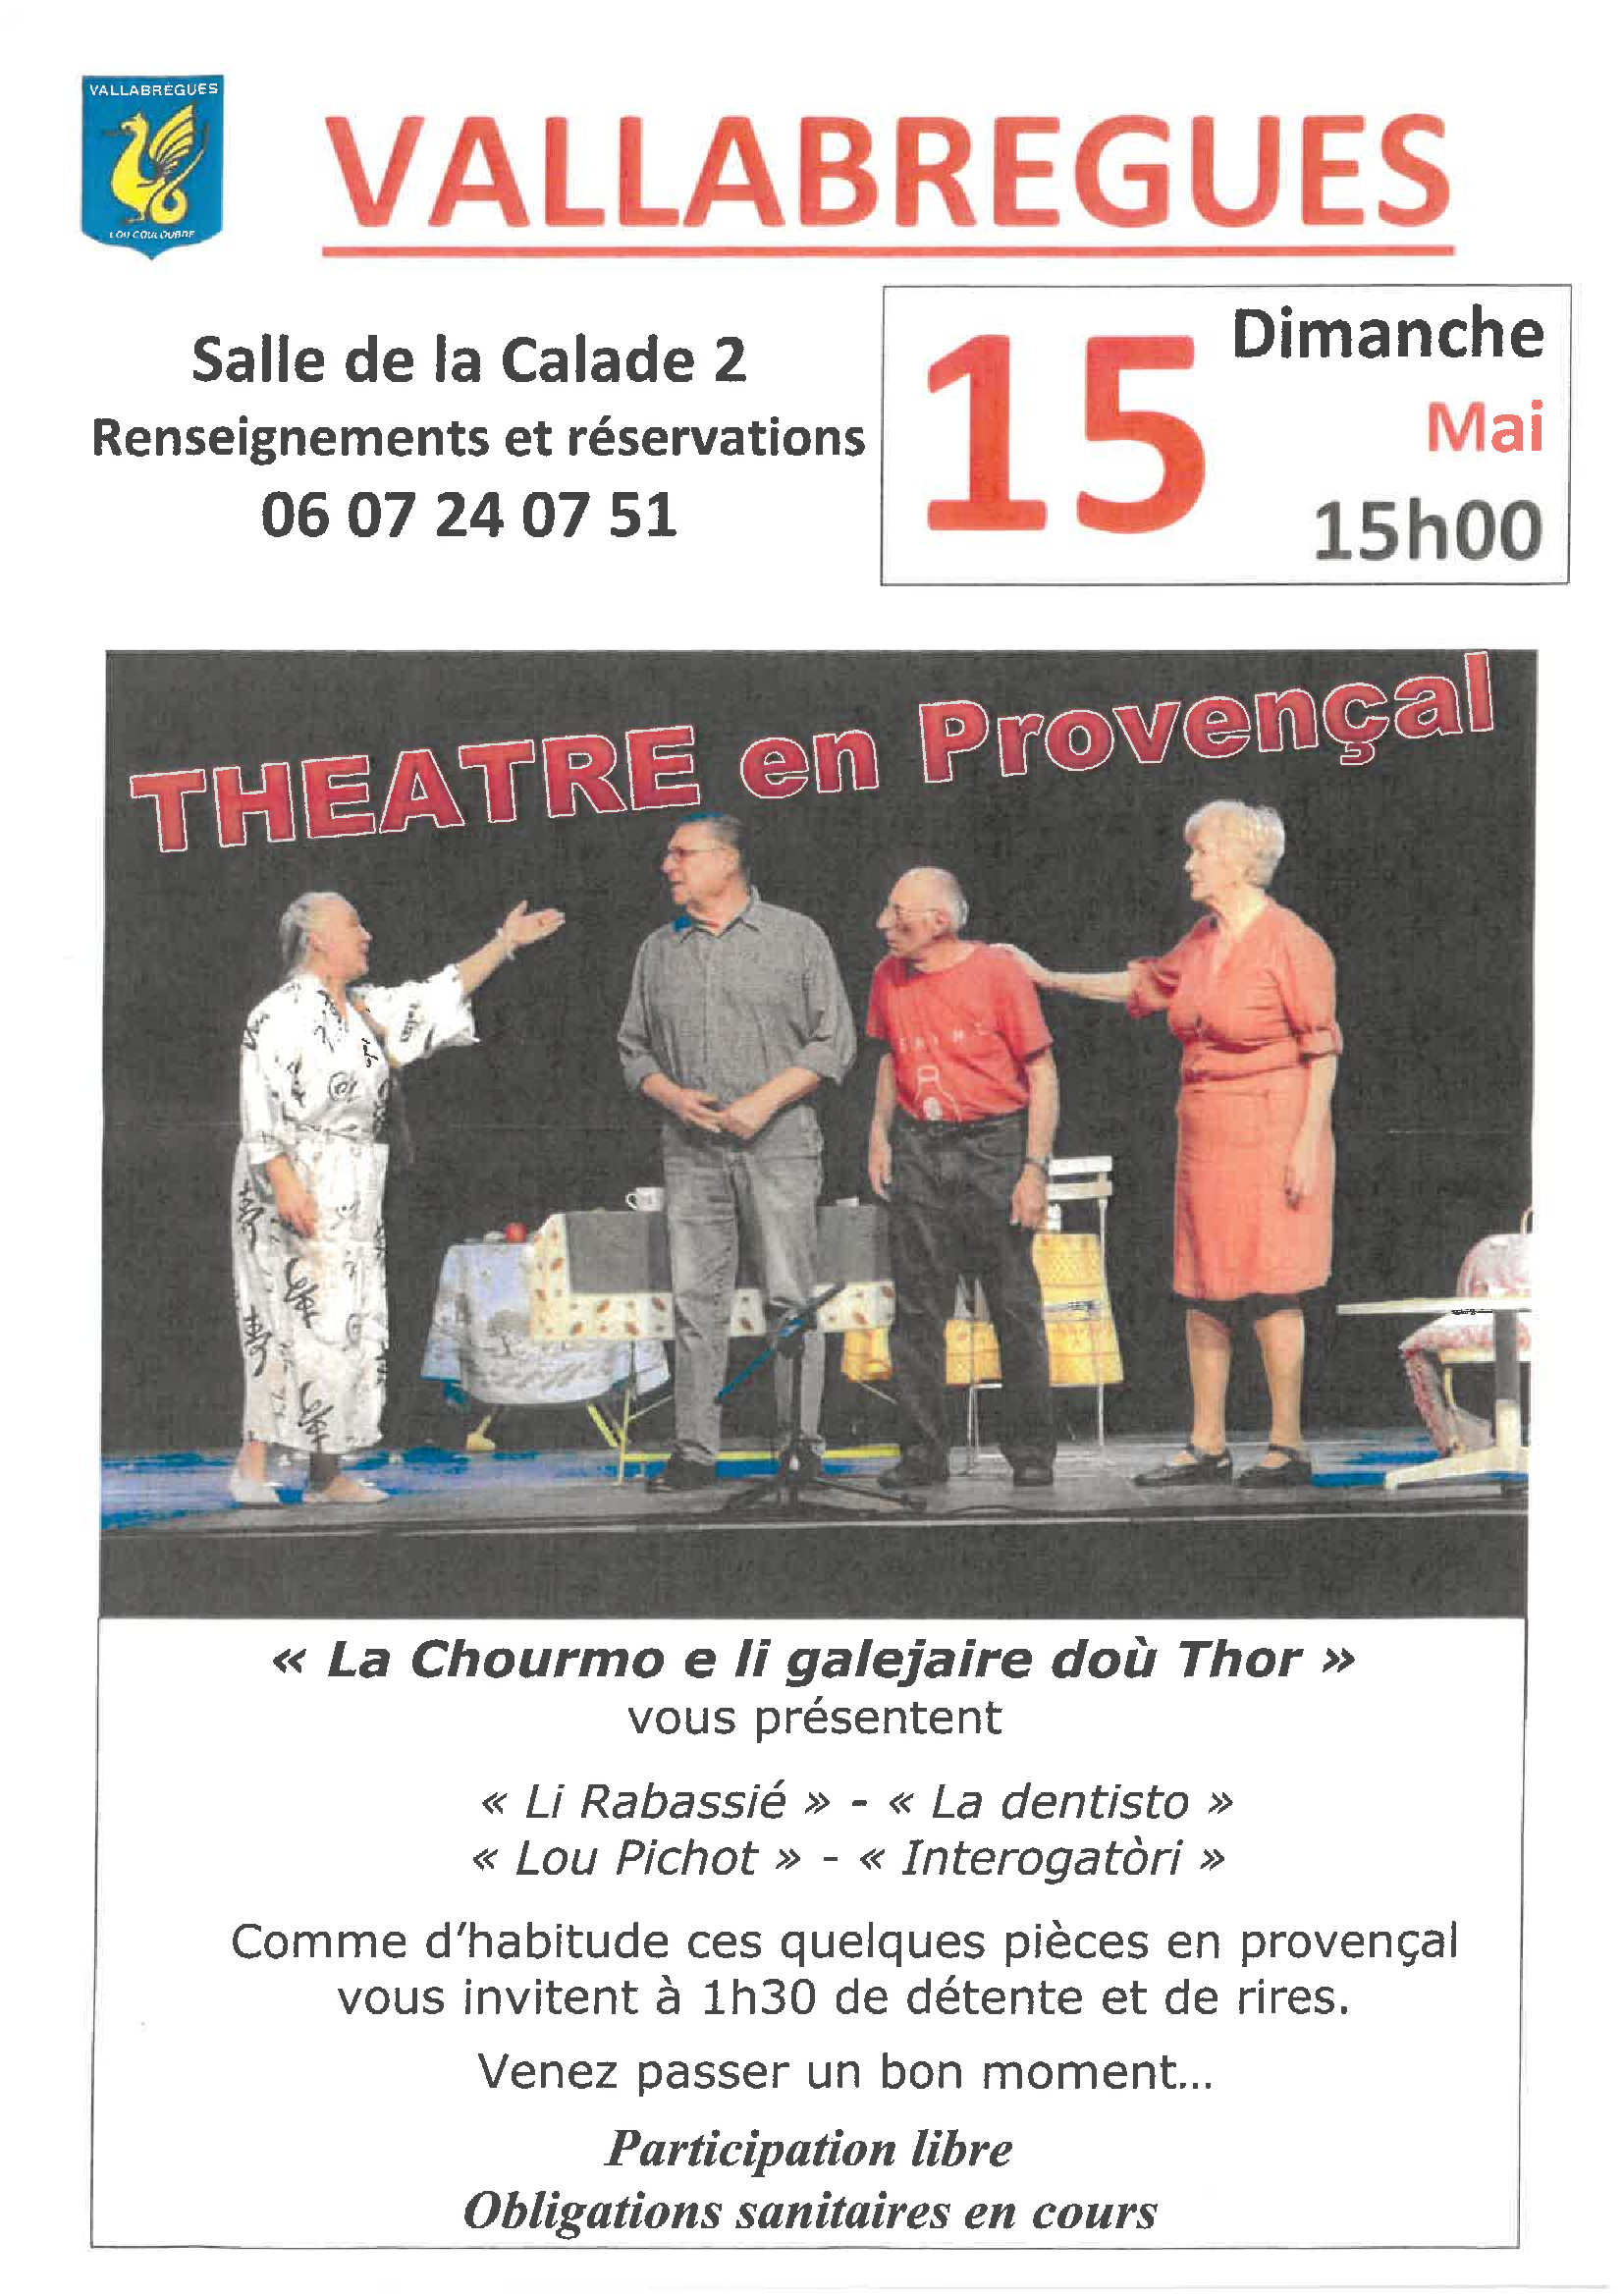 Théâtre en provençal à Vallabrègues 15 mai 2022